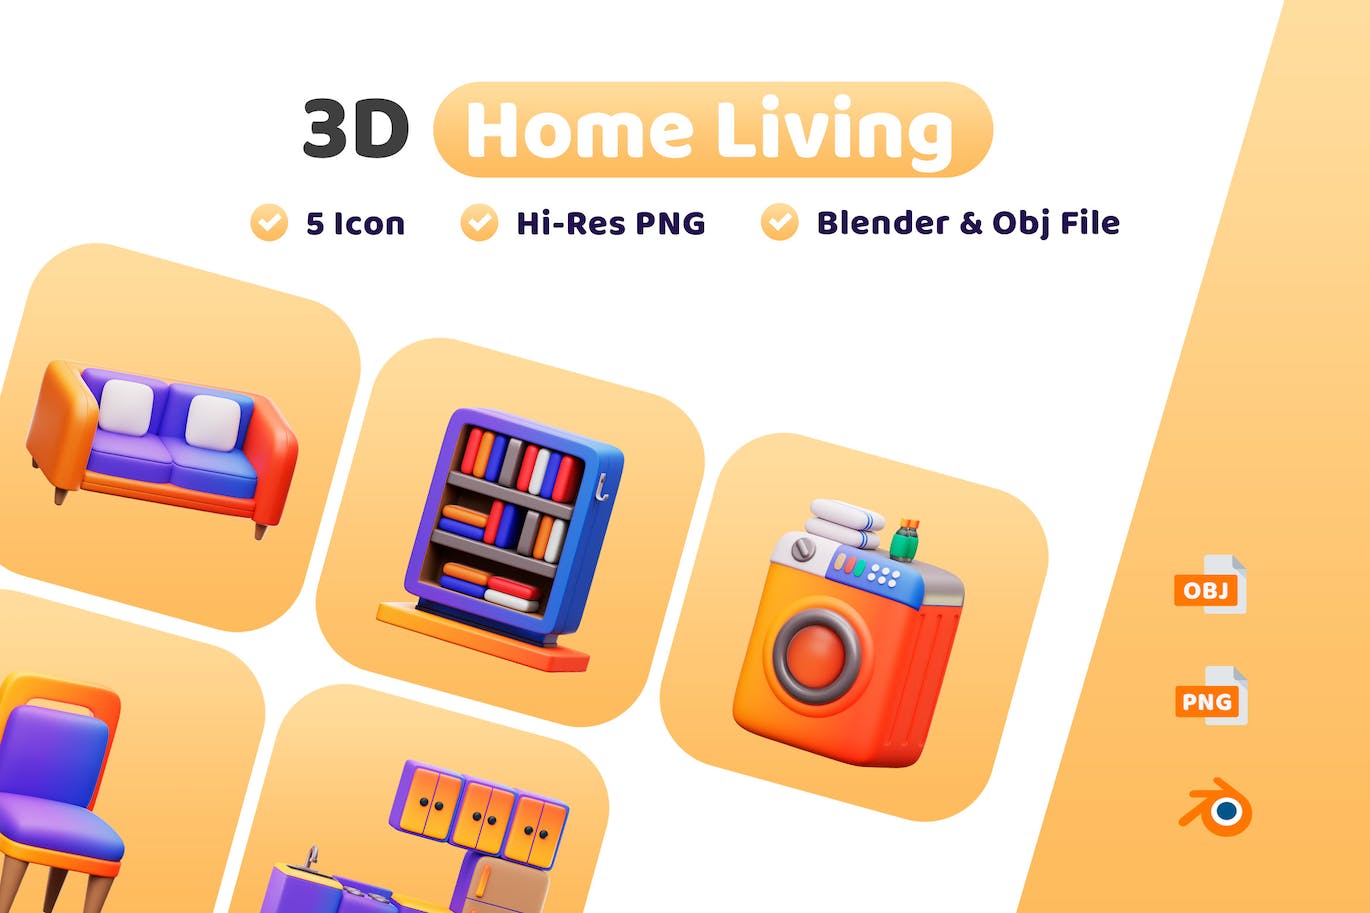 家用电器3D图标 (PNG,Blend,OBJ)